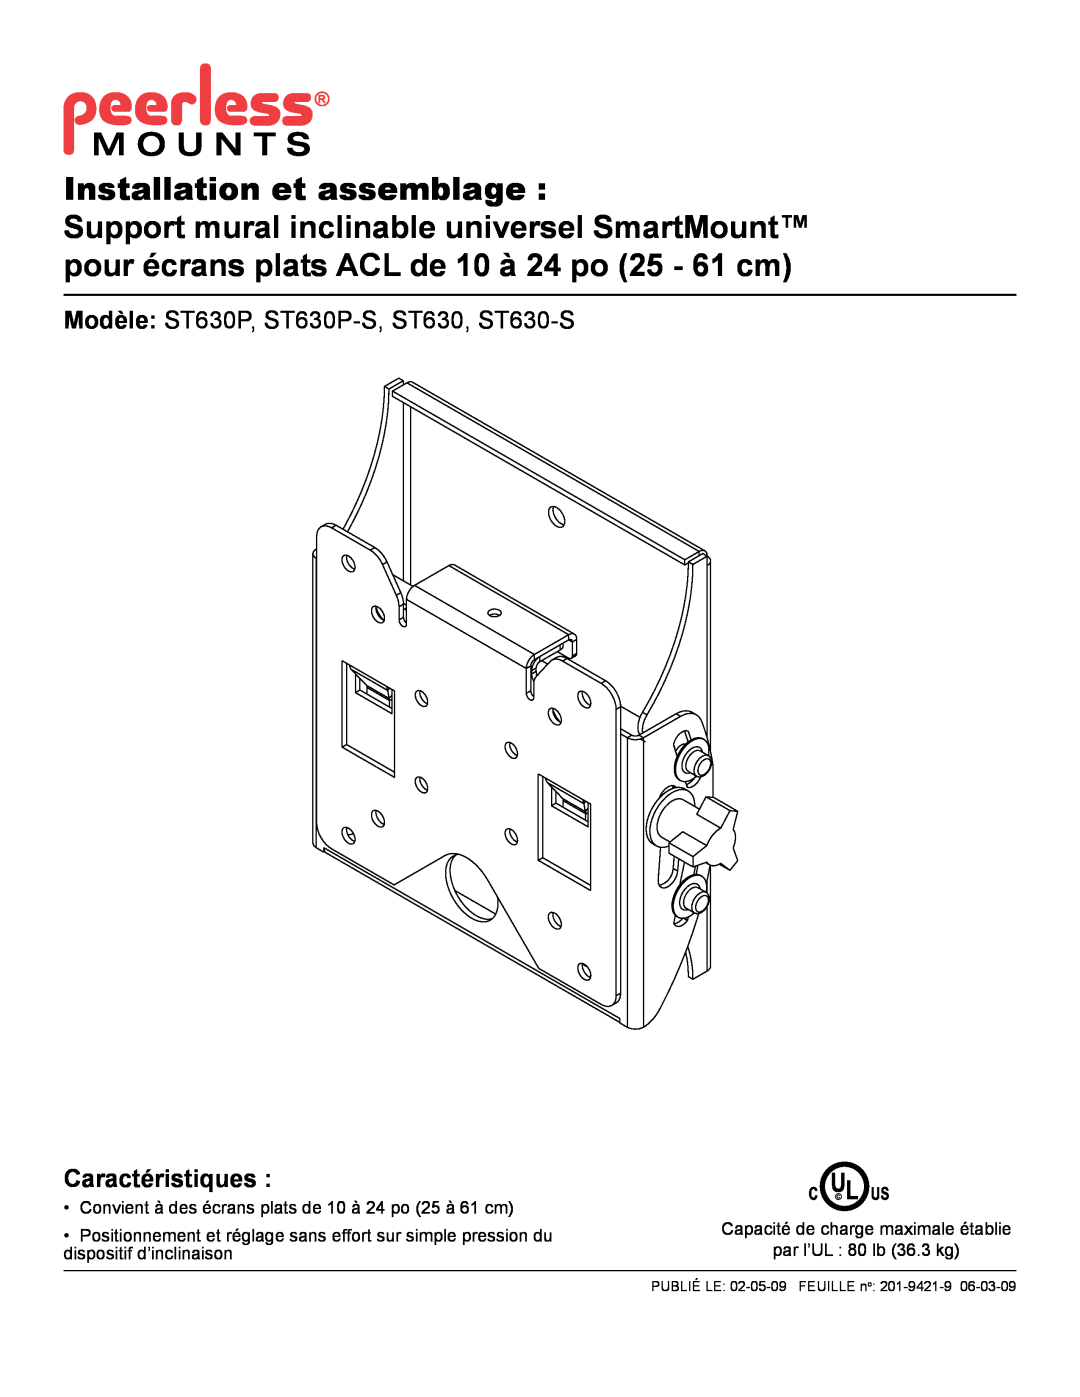 Peerless Industries manual Installation et assemblage, Modèle ST630P, ST630P-S,ST630, ST630-S, Caractéristiques, Cu L Us 